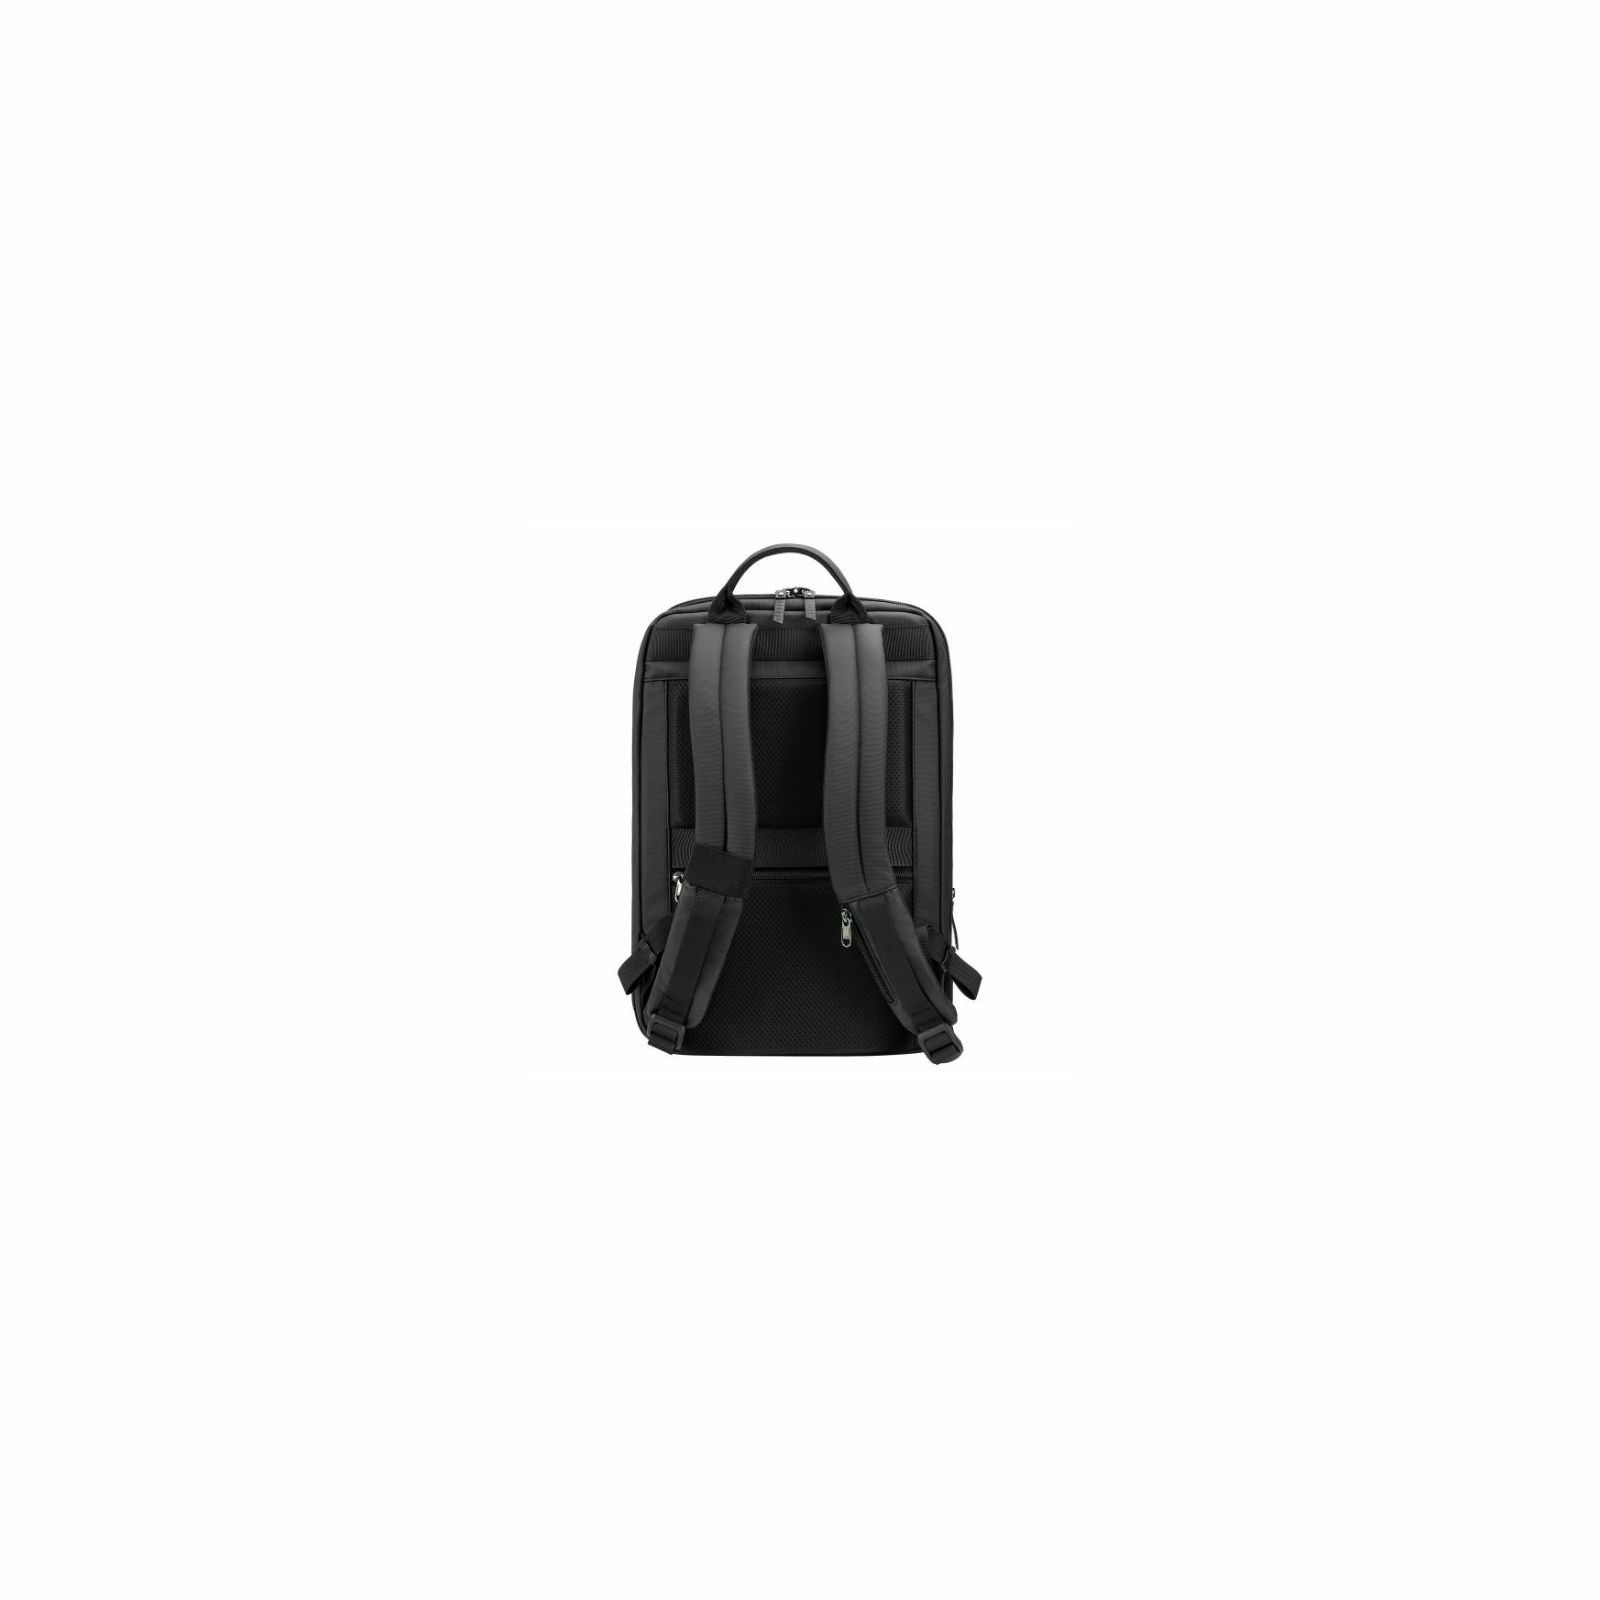 tigernu-laptop-backpack-methone-156-black-1752-6928112310173_48414.jpg